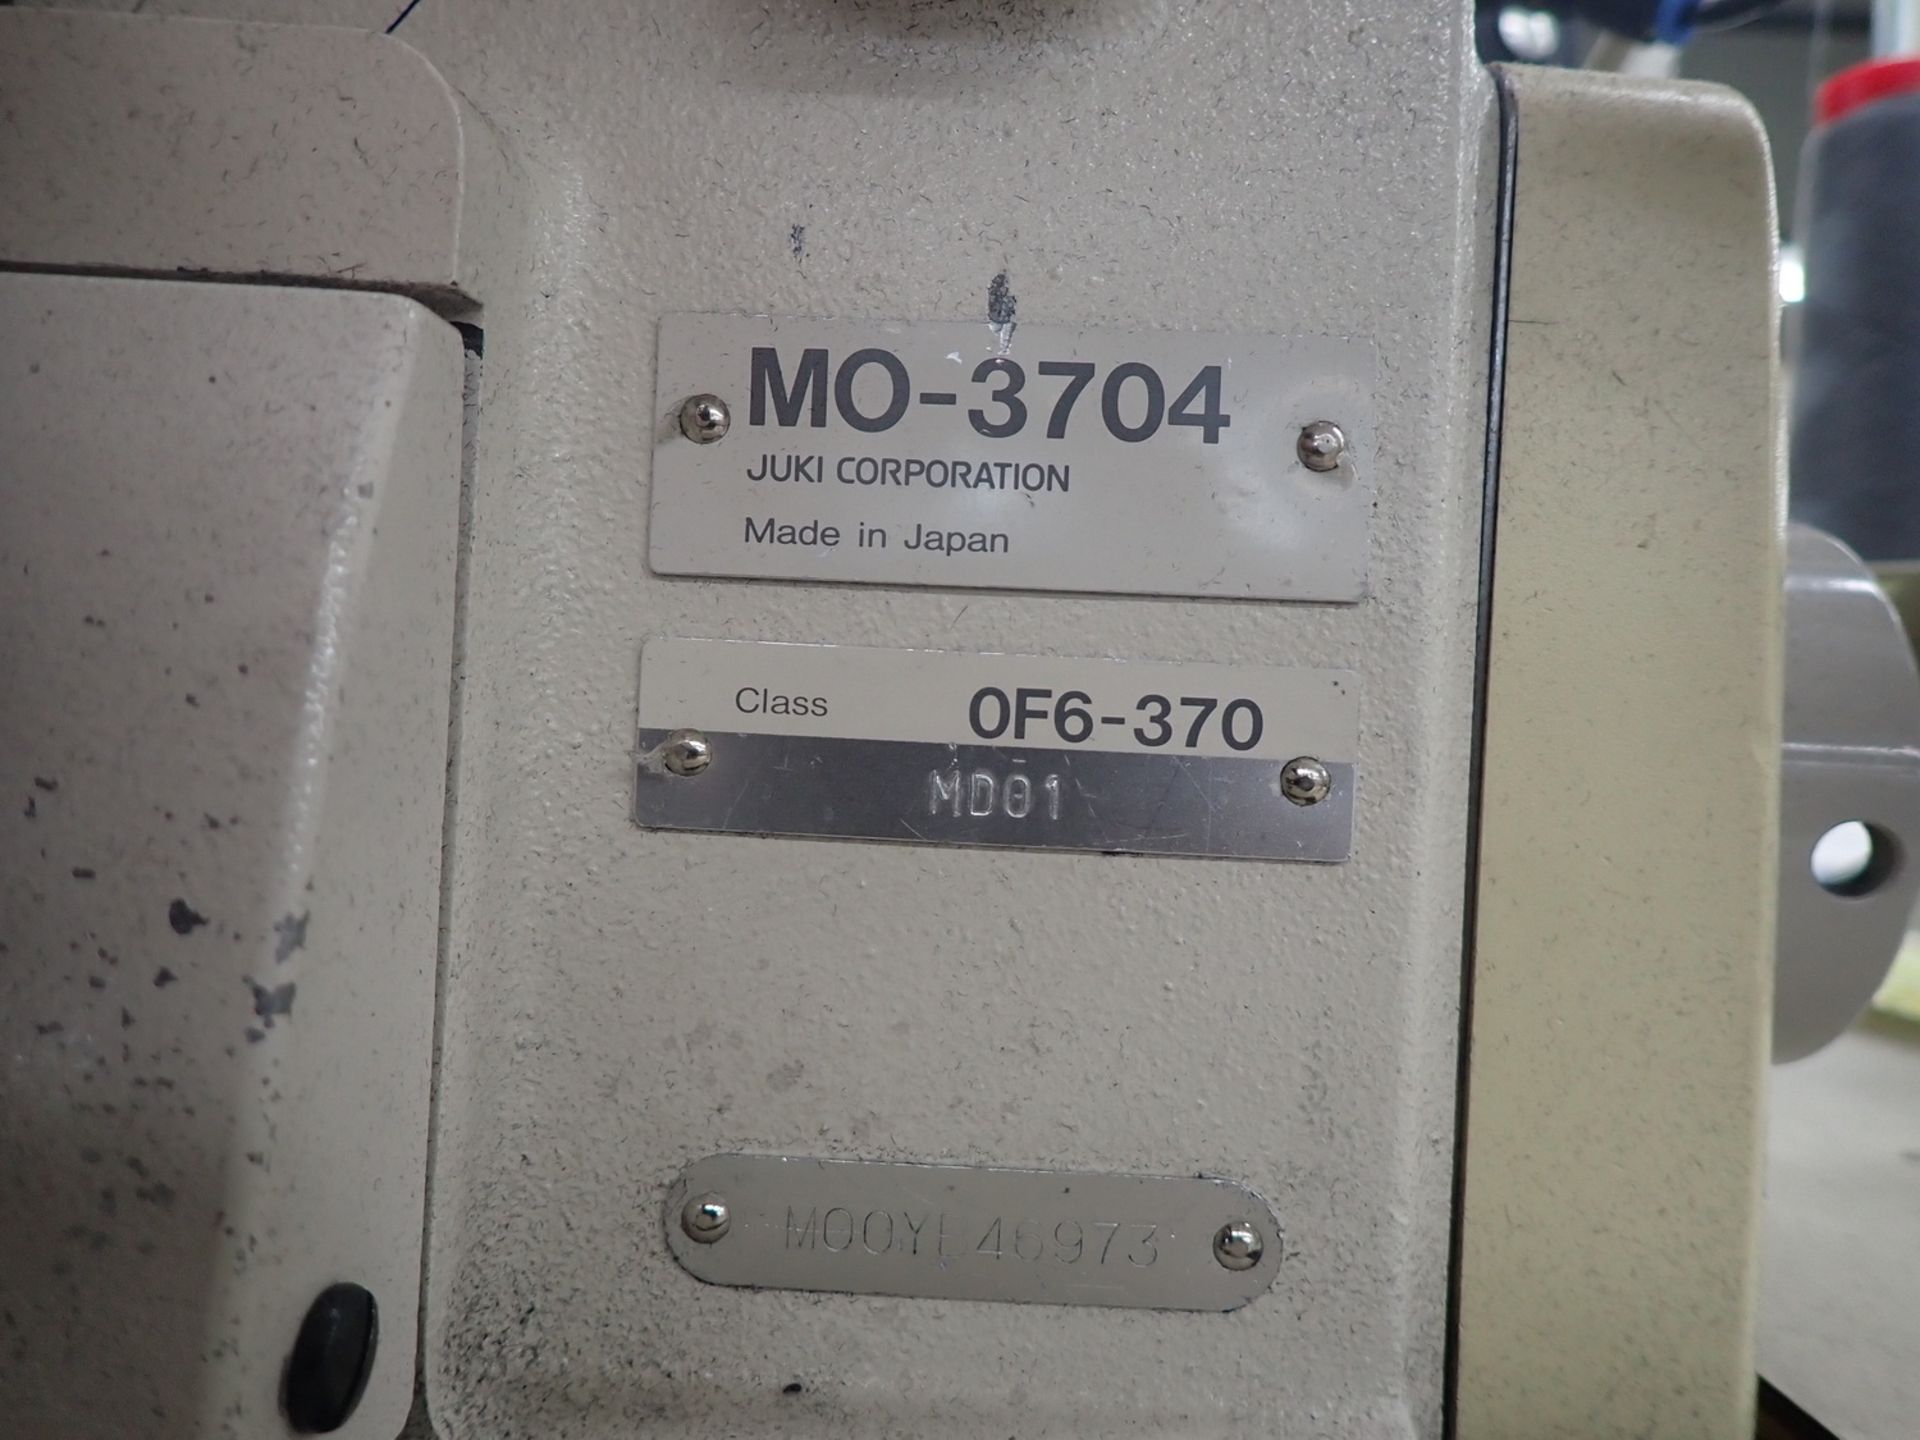 JUKI MO-3704 3-THREAD SERGER W/ RACING TFU-15 TAPE METER & MD01 CONTROLLER, SN MOOYB46973 - Image 4 of 11